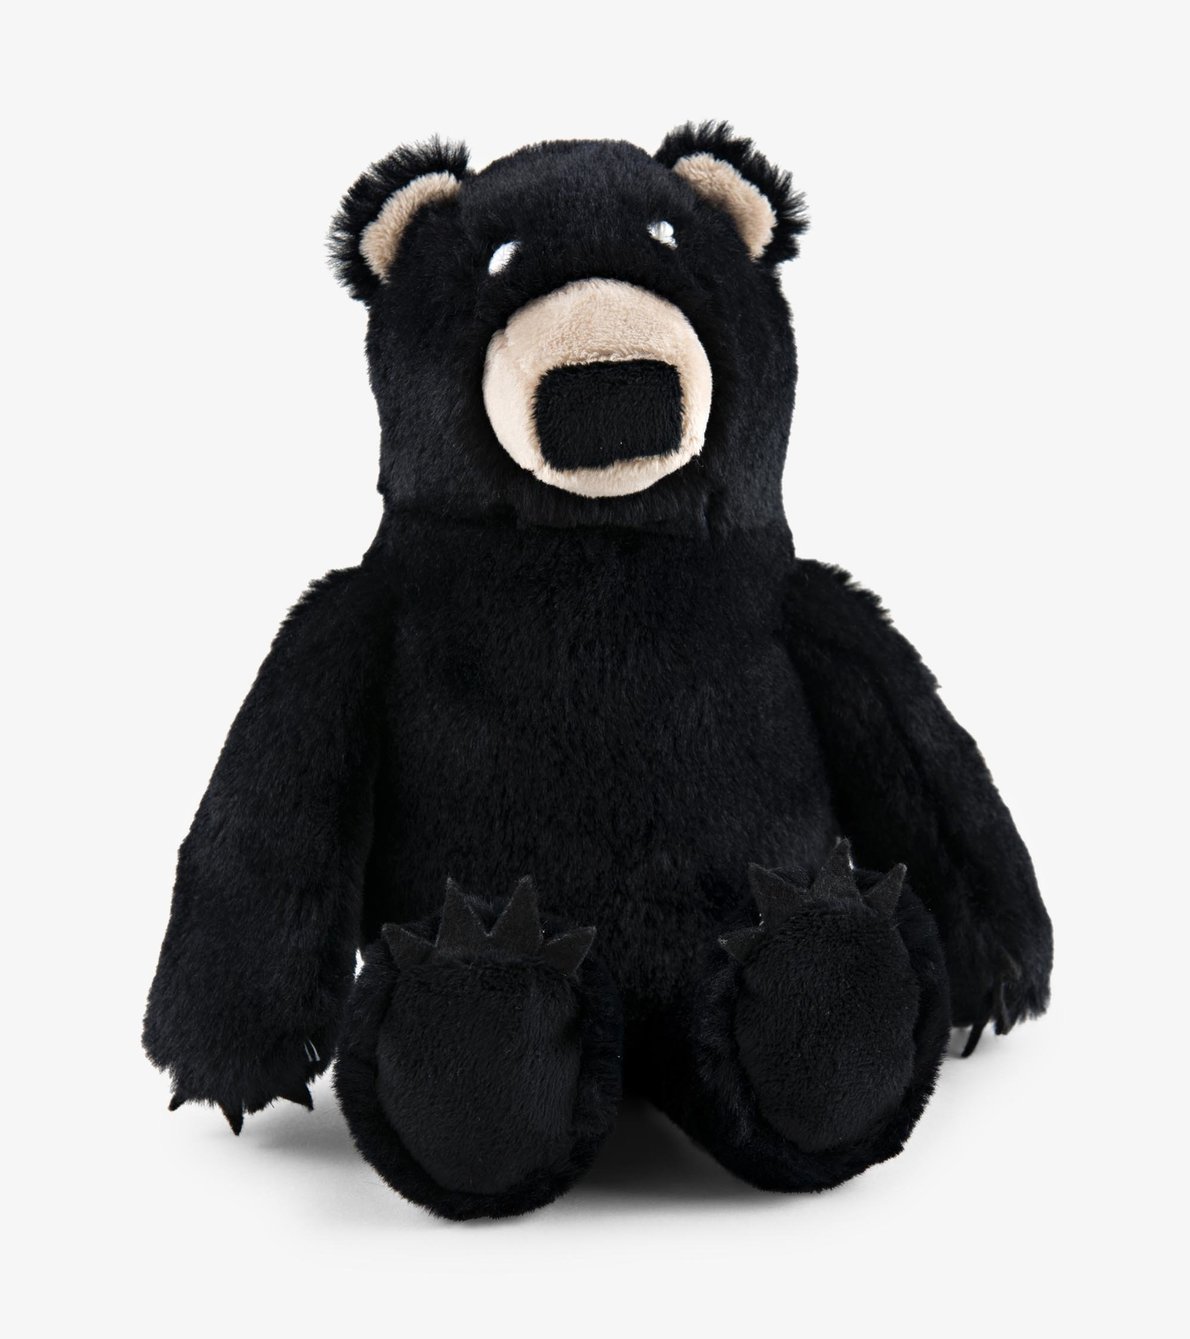 View larger image of Black Bear Plush Animal